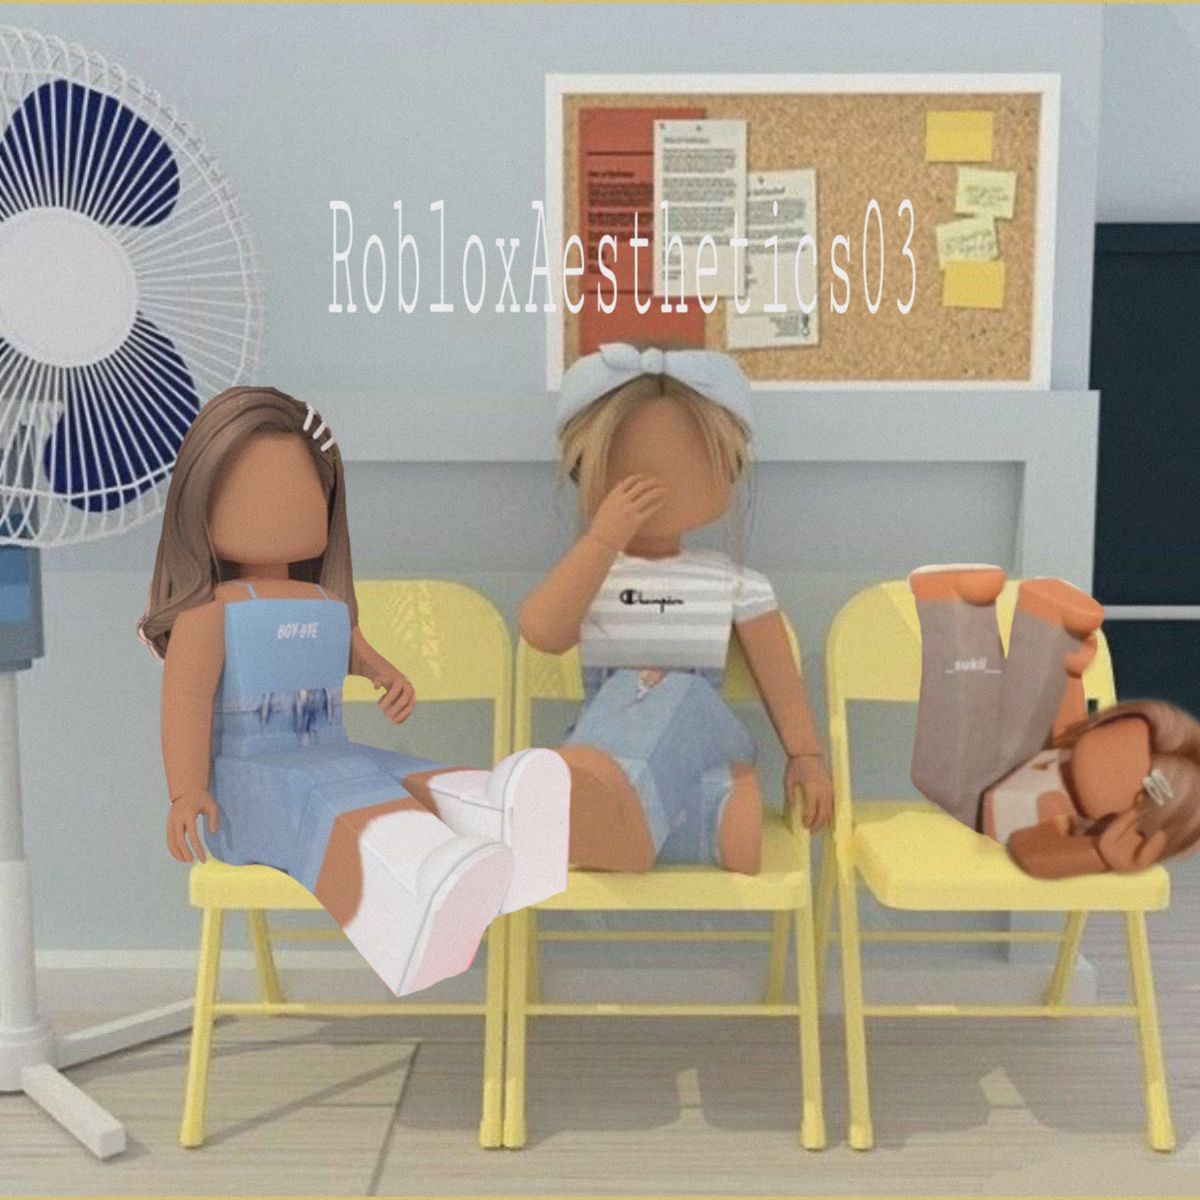 RobloxAesthetics03. Roblox, Roblox animation, Cute profile picture